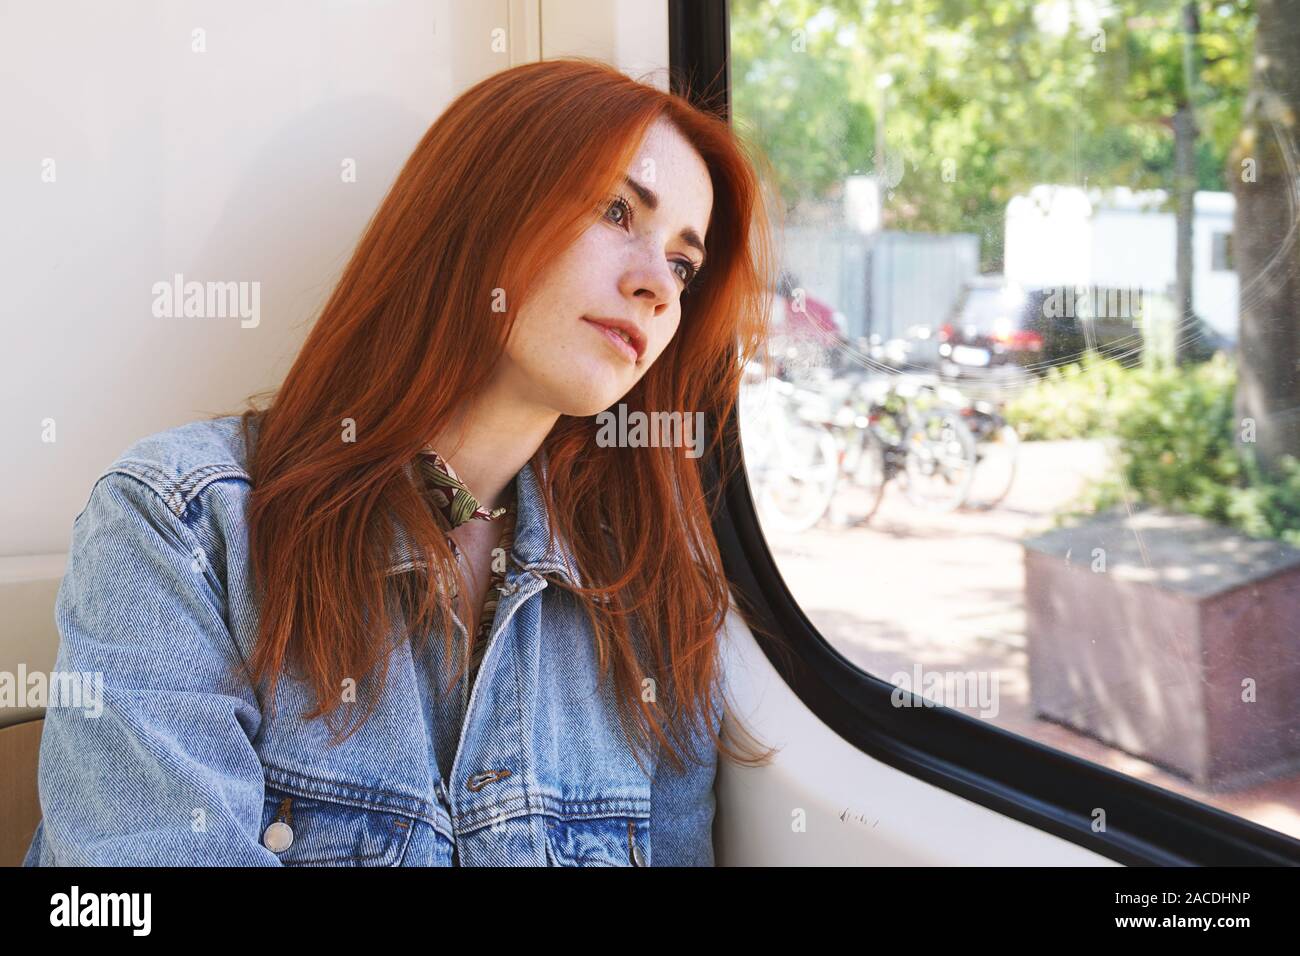 Ehrliche junge Frau in der Straßenbahn oder der U-Bahn sitzen, schauen aus dem Fenster - der öffentliche Verkehr und pendeln Konzept Stockfoto